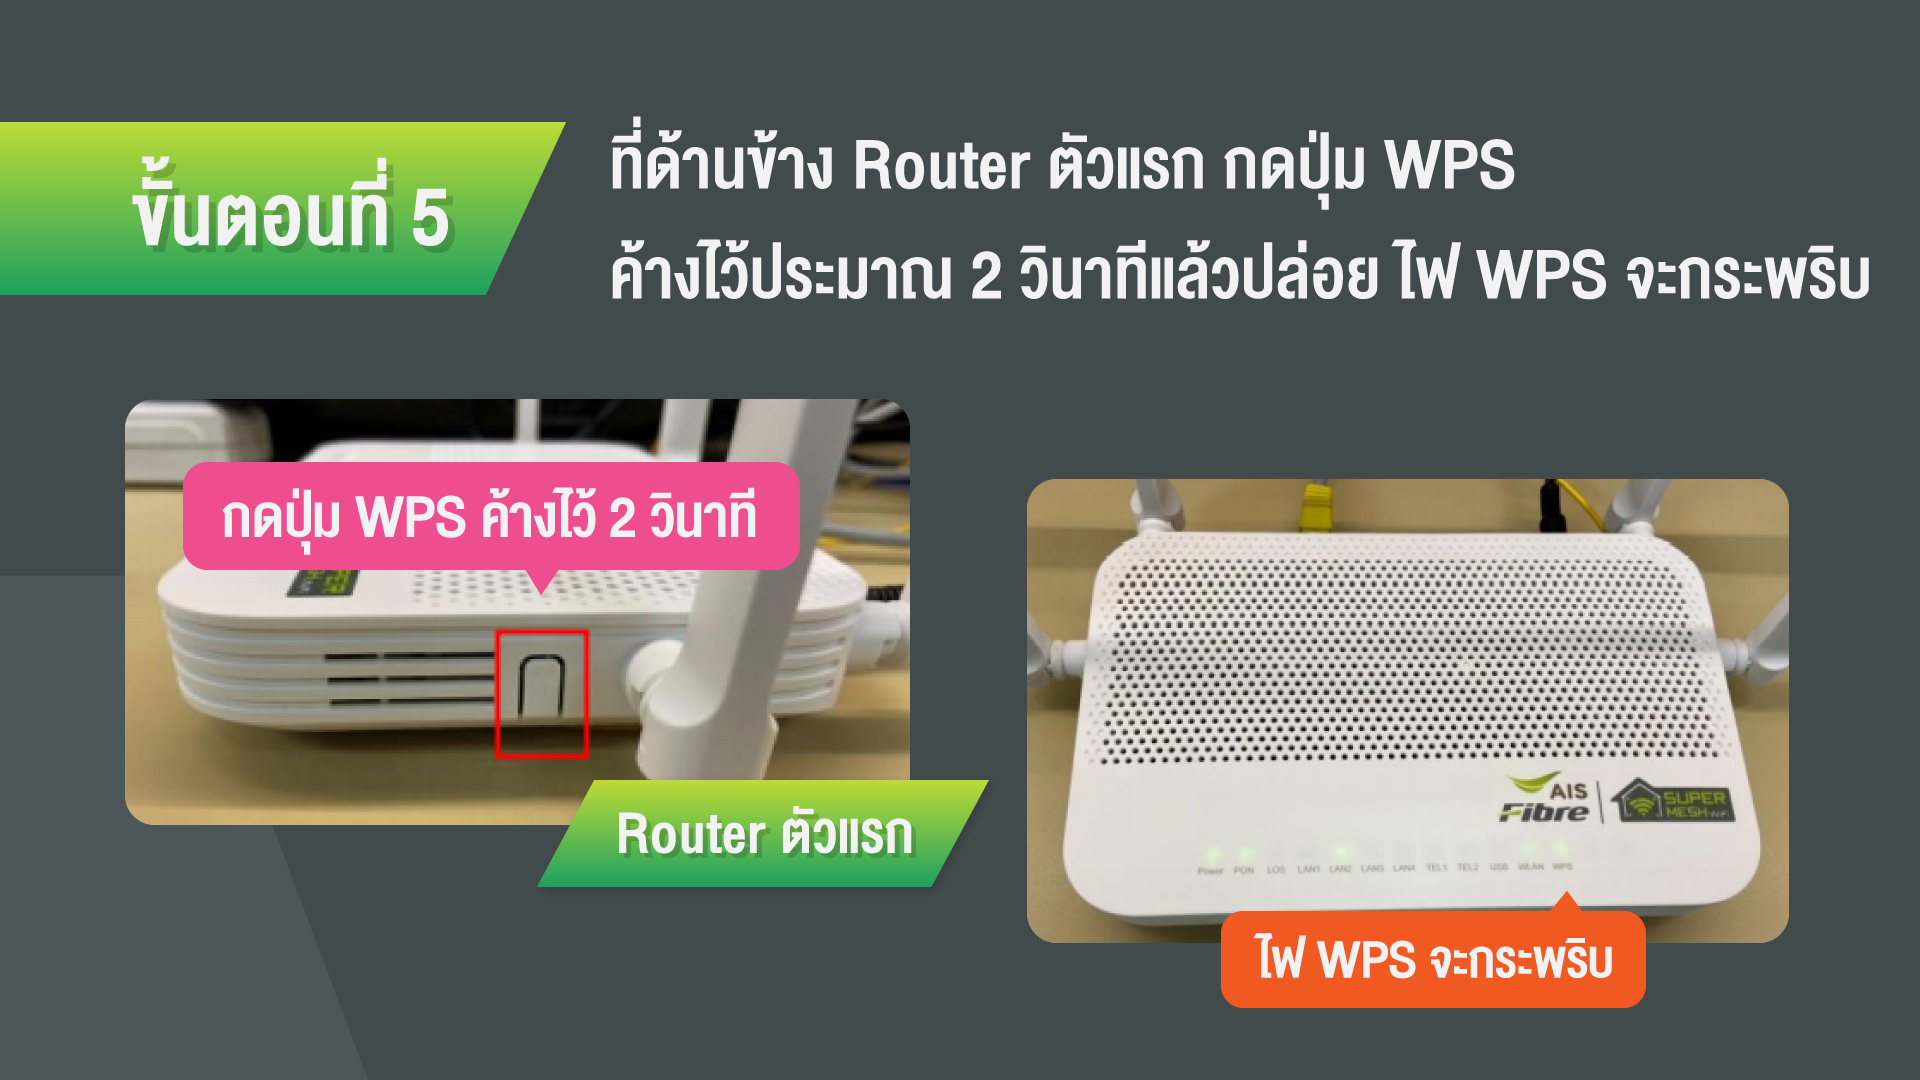 mesh router vs regular